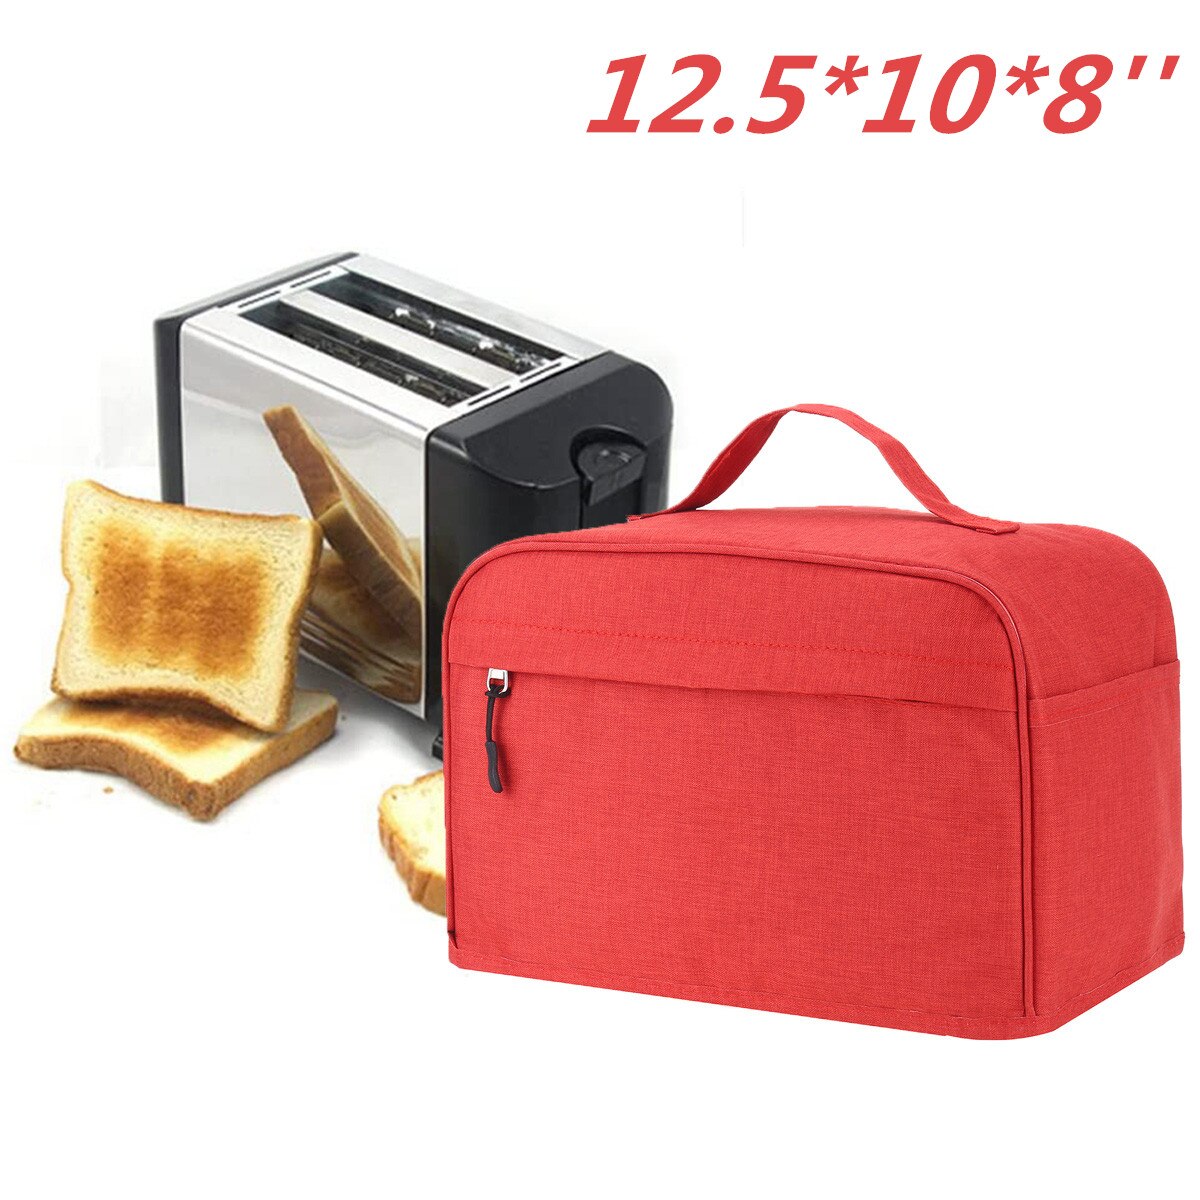 2 or 4 skive brødrister dækning toast maskindæksel bakeware polyester betræk beskytter støvtæt køkken rent værktøj husstand: 12.5 x 10 x 8 tommer rød